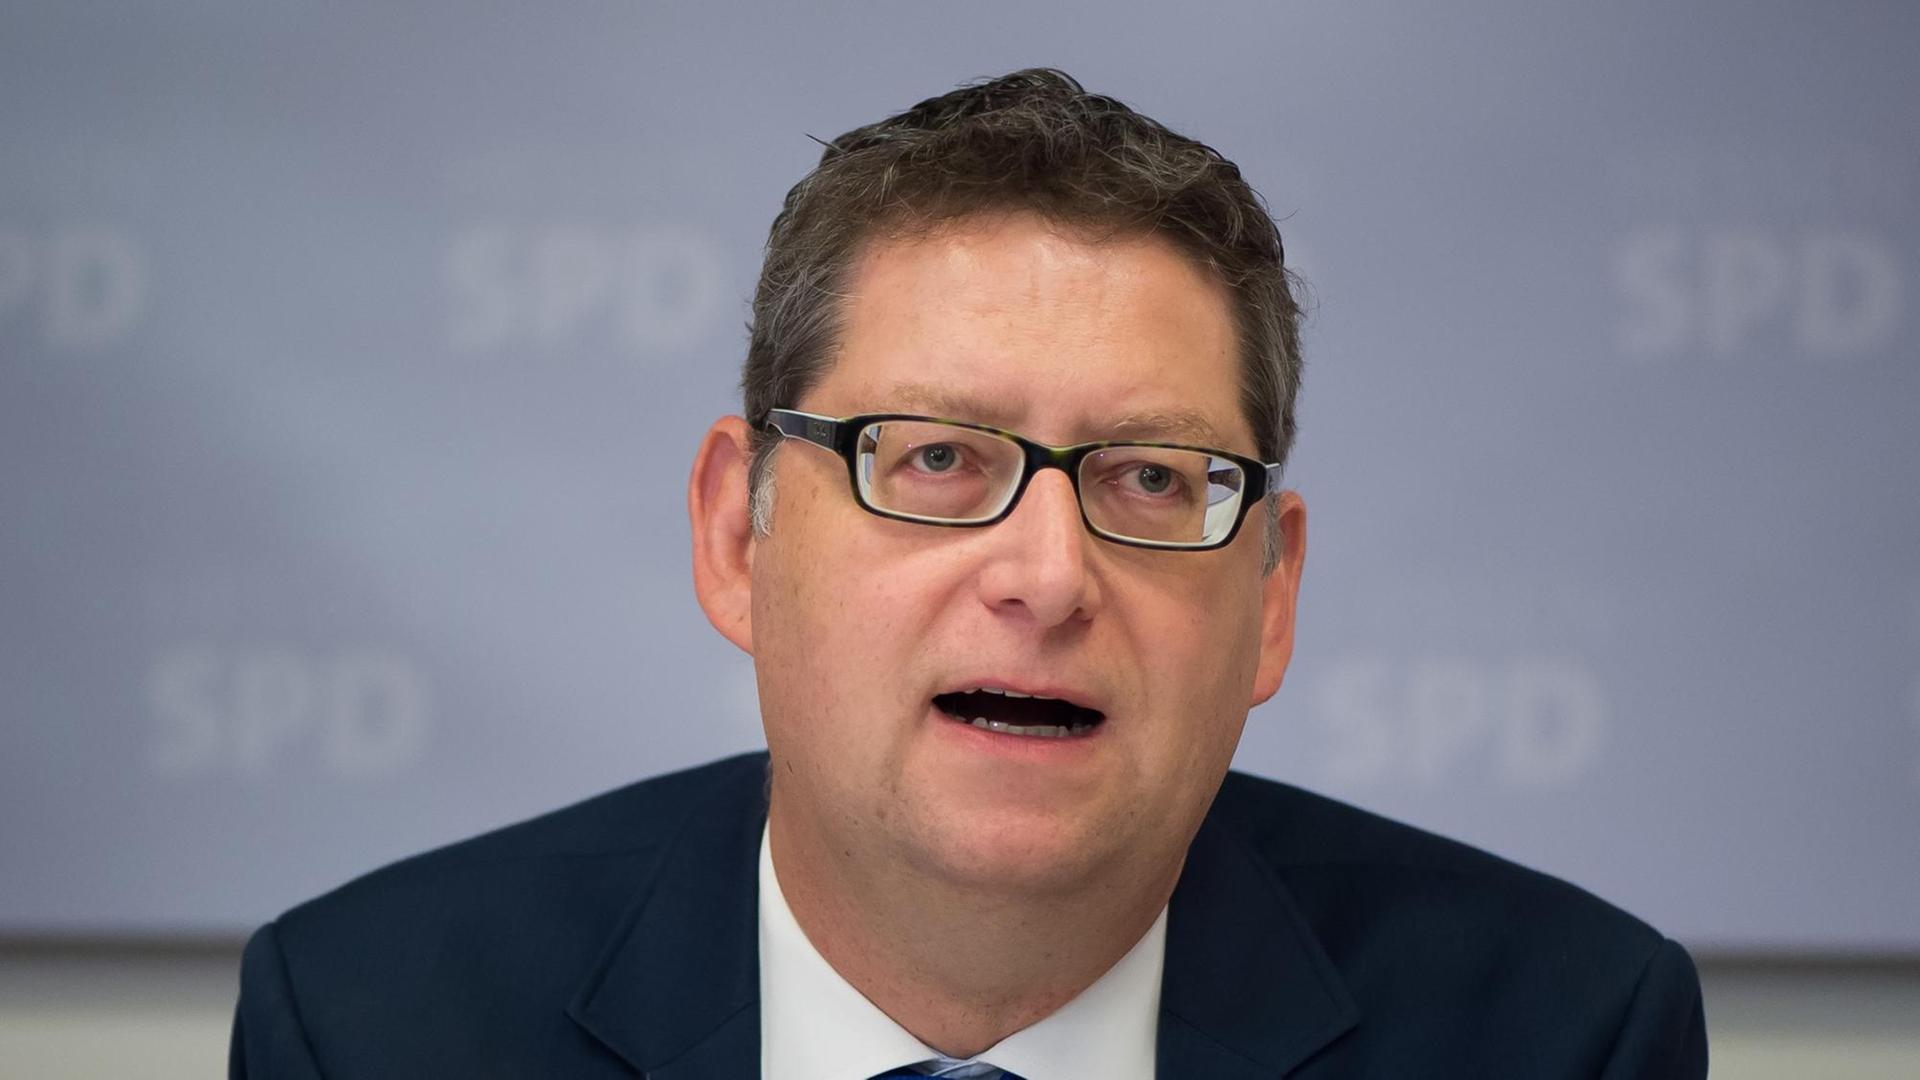 Der stellvertretende SPD-Bundesvorsitzende Thorsten Schäfer-Gümbel am 04.02.2017 auf einer Pressekonferenz der hessischen SPD in Friedewald.